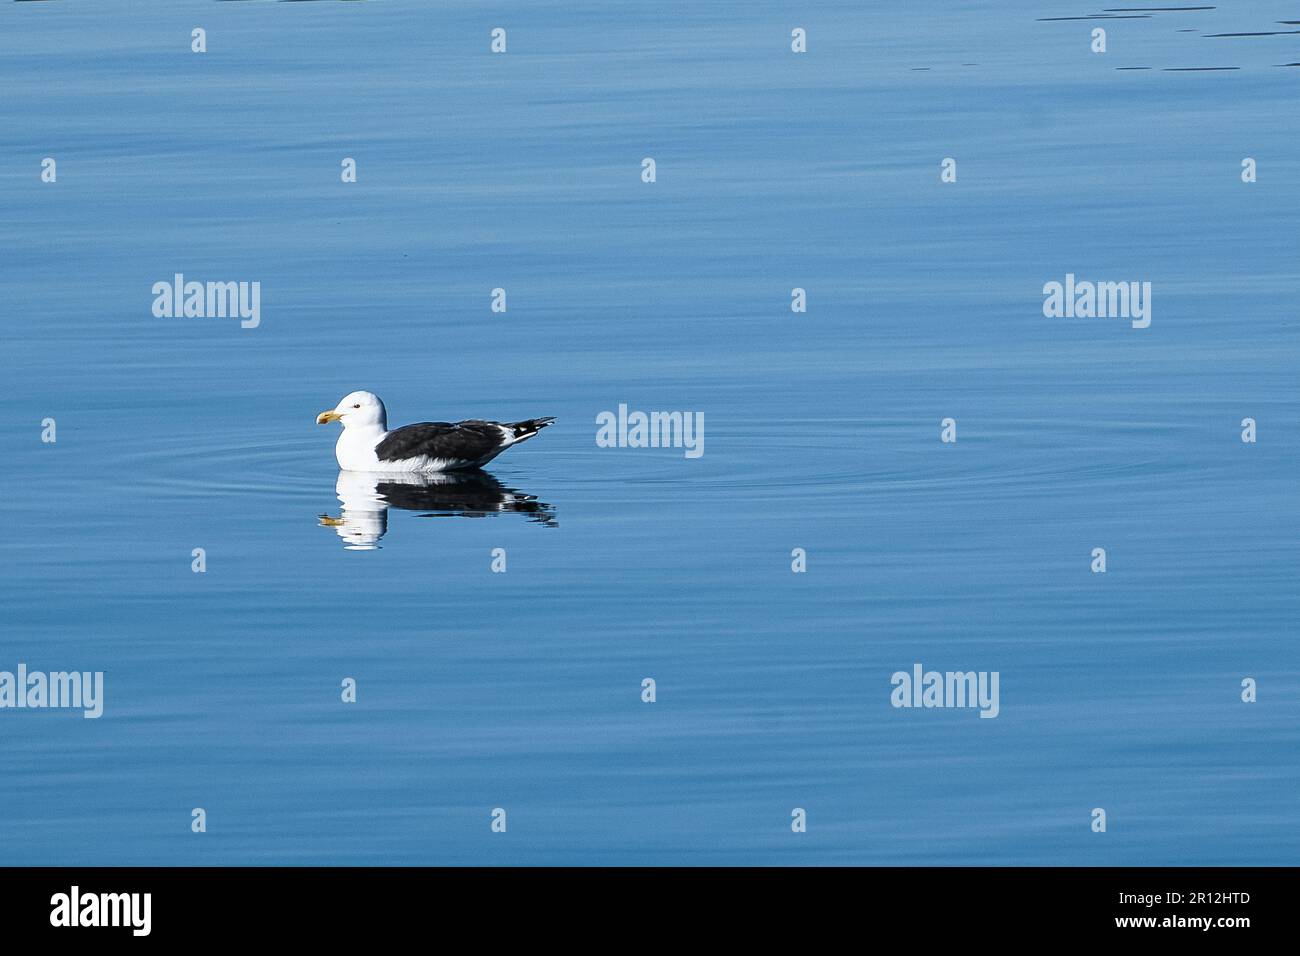 le mouette nage sur le fjord de Norvège dans une eau calme. L'oiseau de mer se reflète dans l'eau. Photo d'animal de Scandinavie Banque D'Images